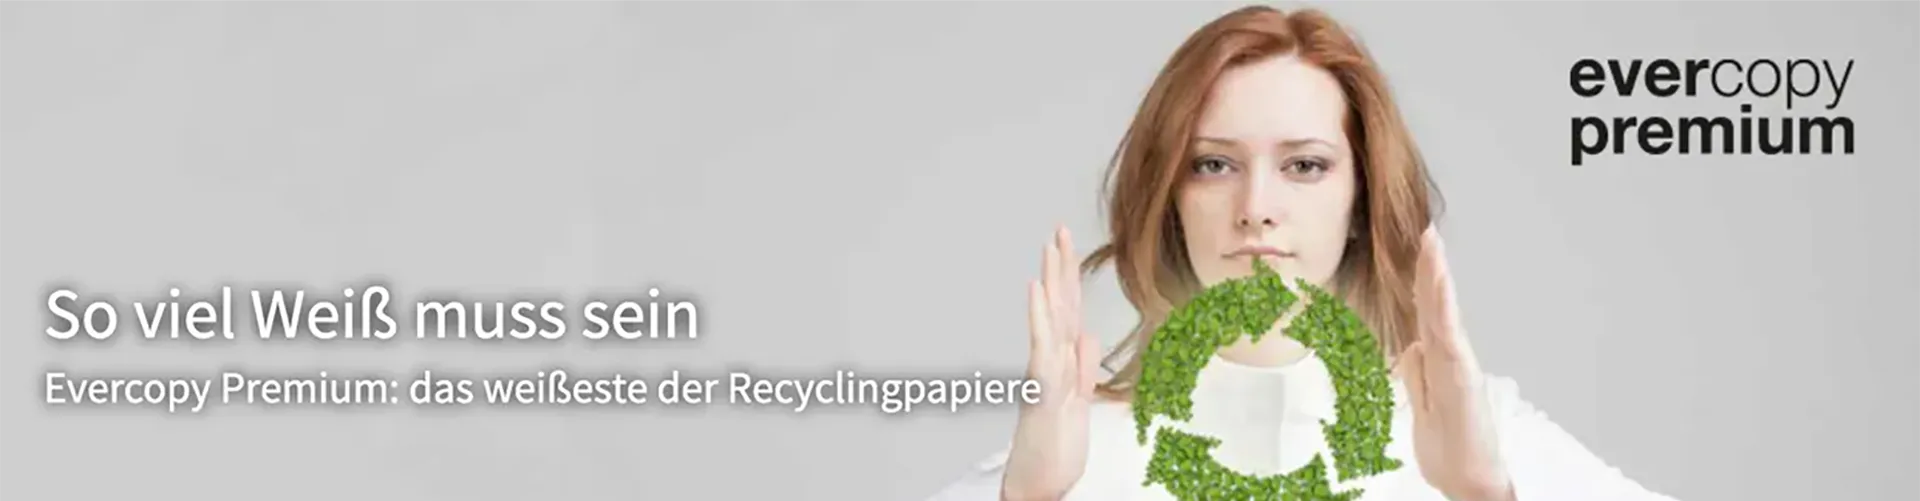 Headerbild von Evercopy Premium Recyclingpapier